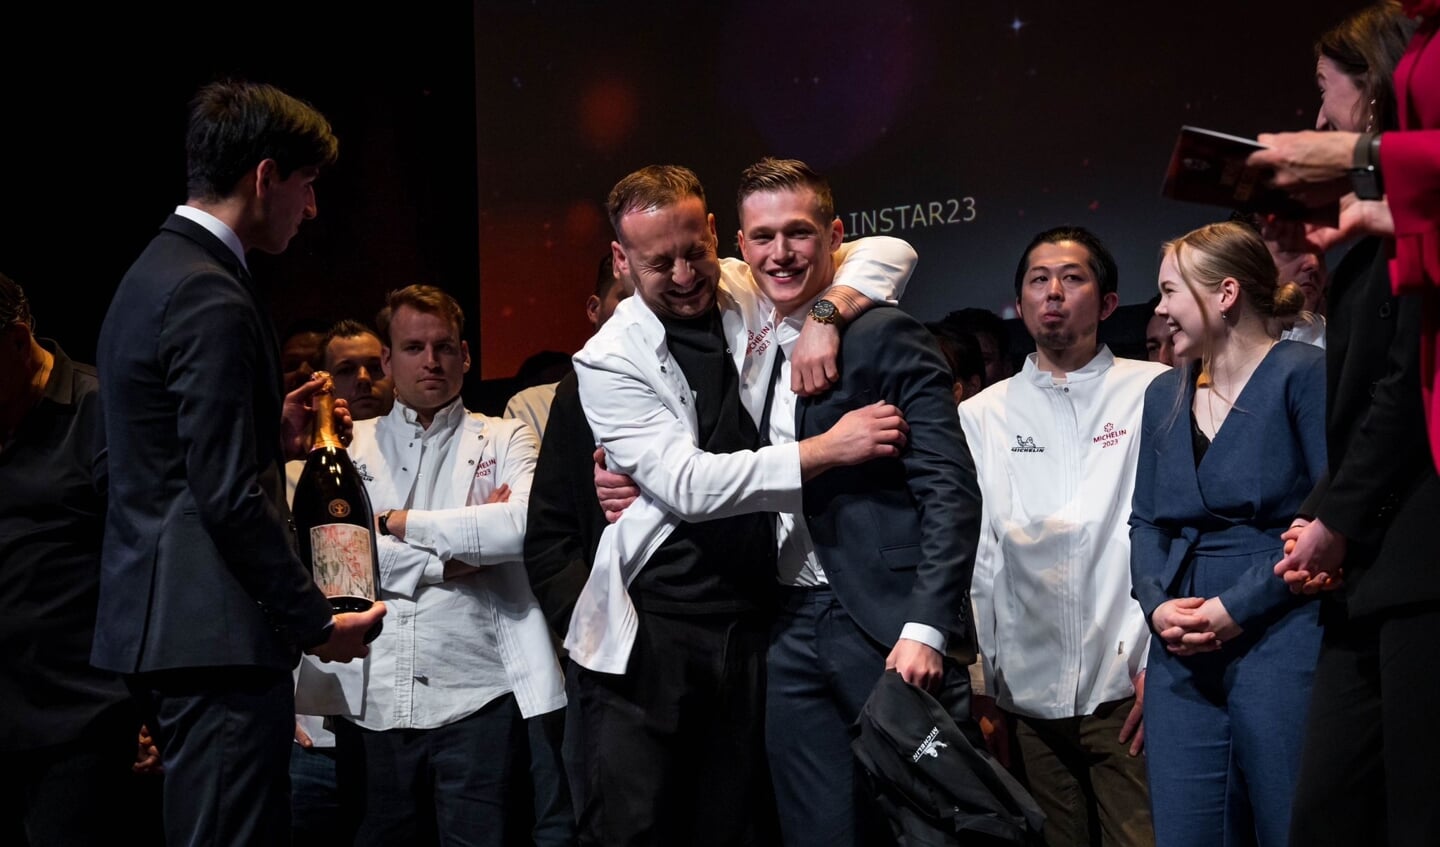 Yornie van Dijk is blij met het winnen van de Michelinster: 'Een erkenning en bekroning op ons harde werk'.